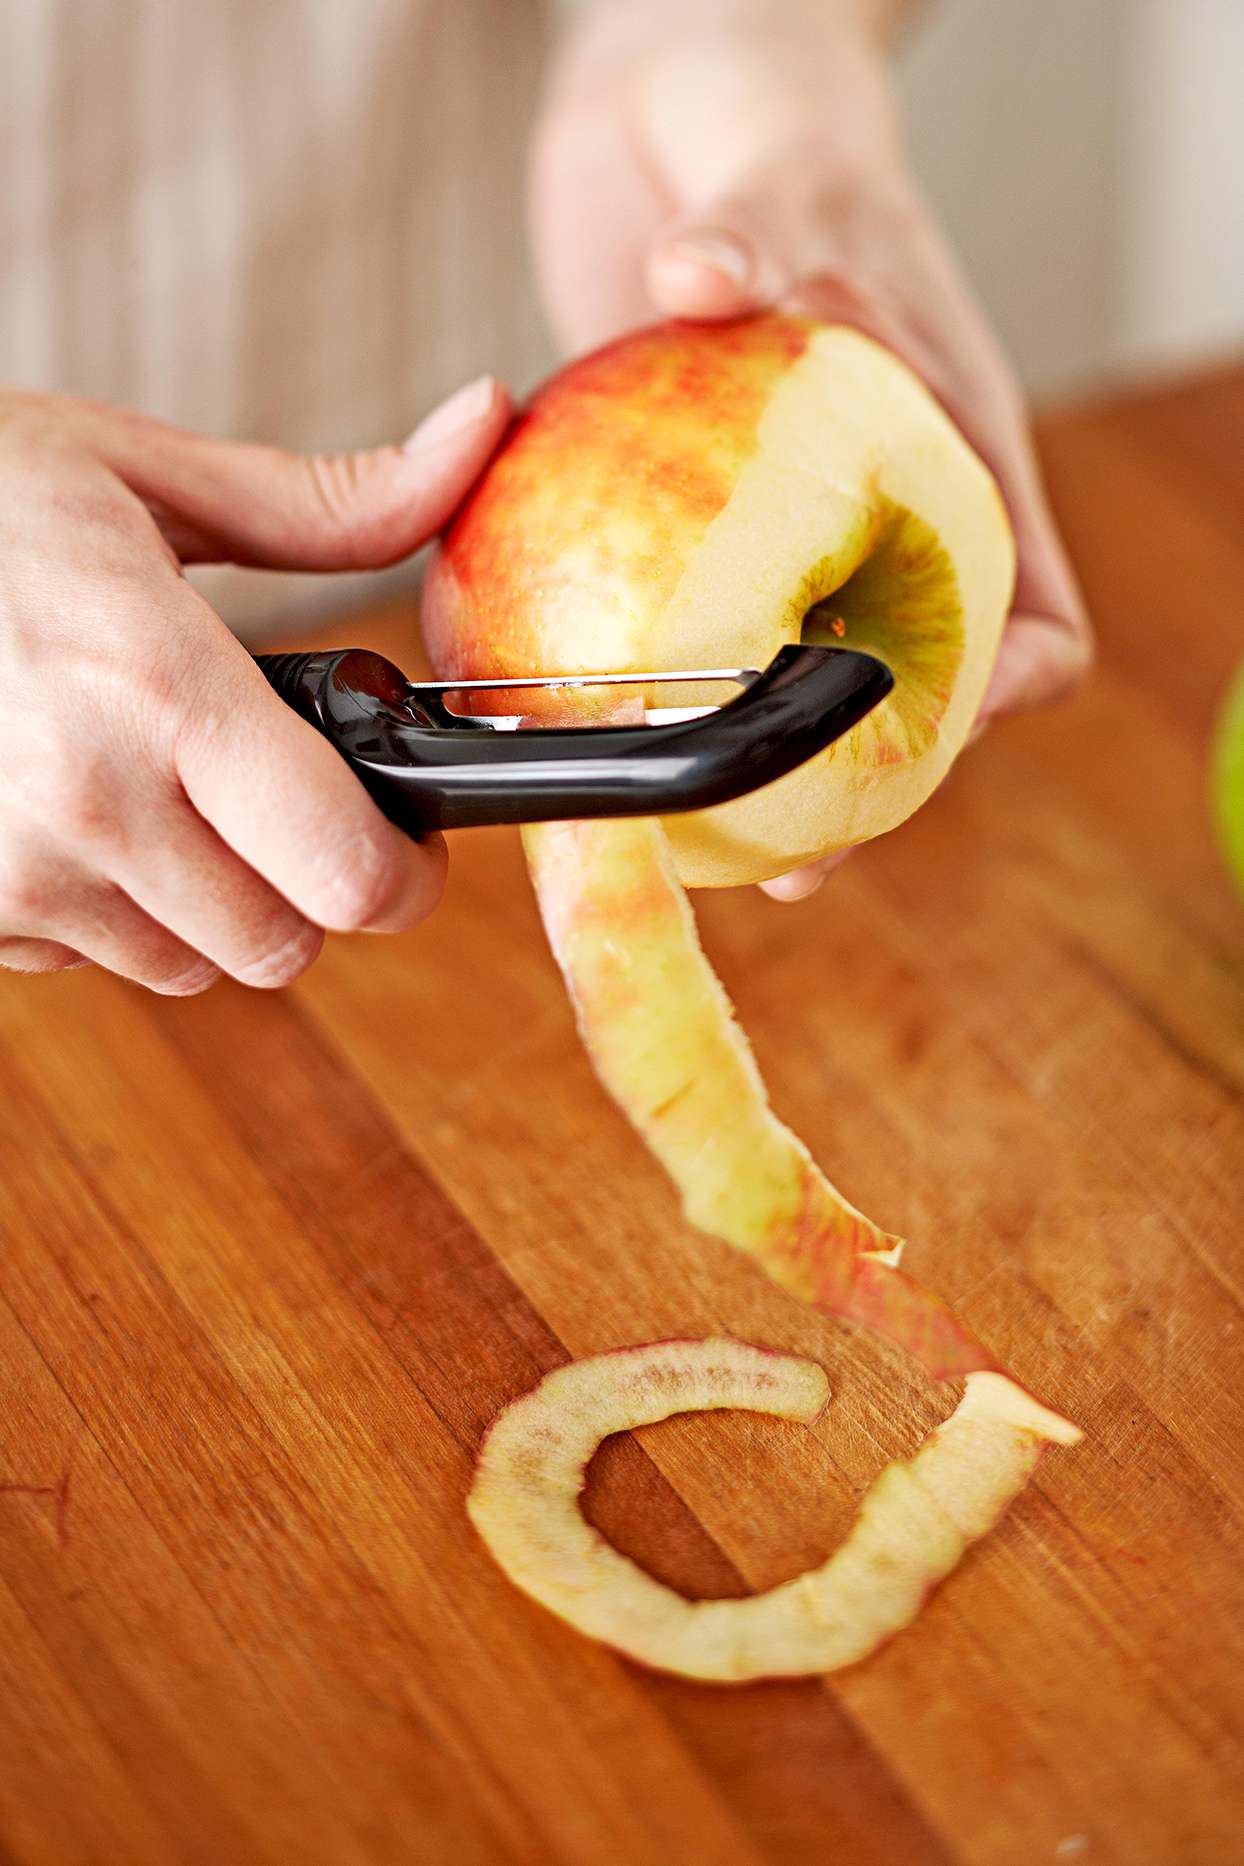 Peeling an apple skin